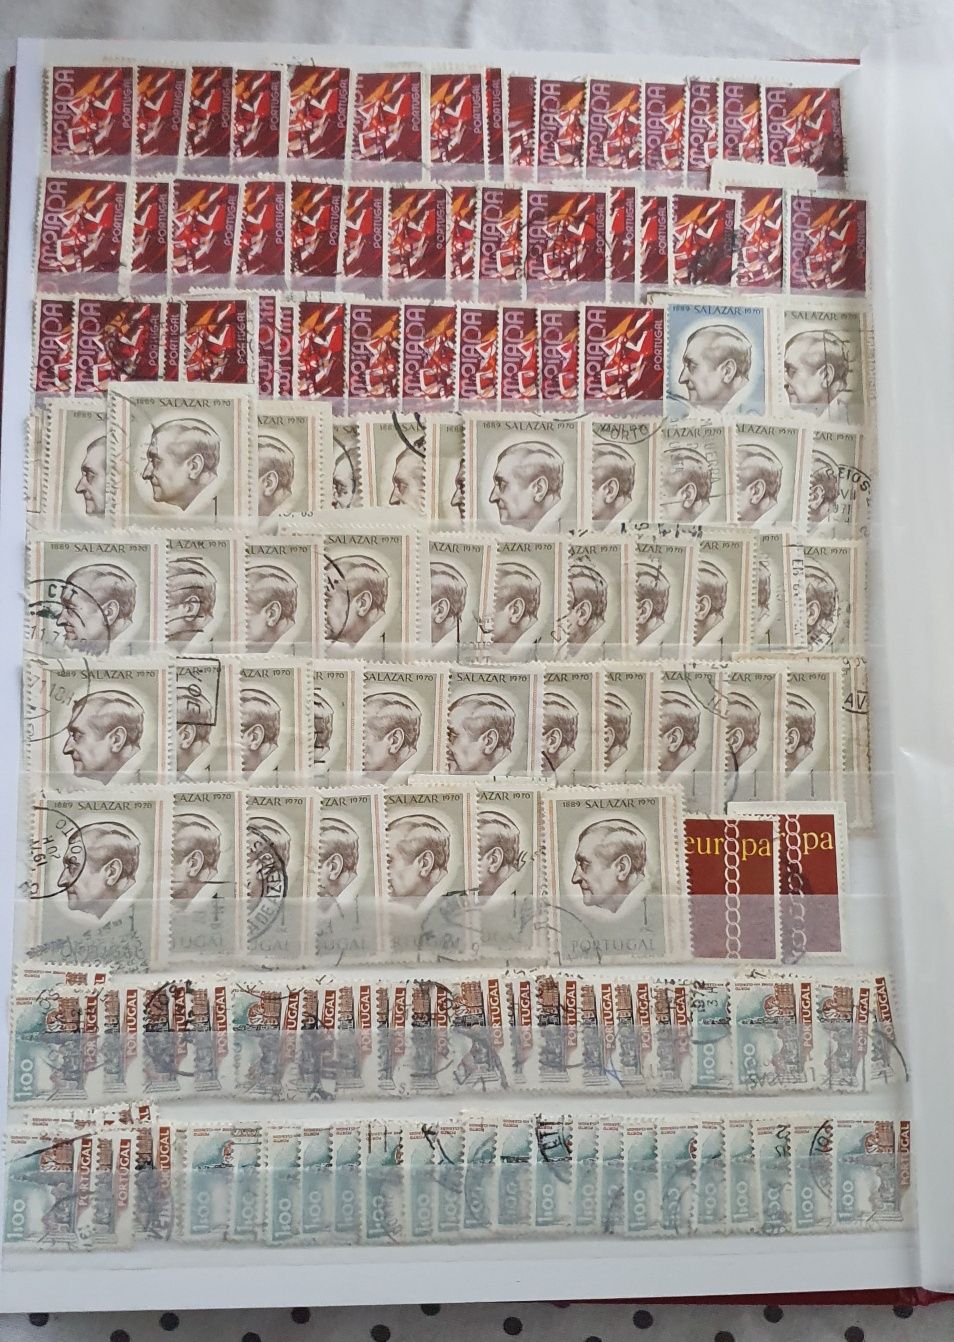 Colecção de selos, alguns com mais de 100 anos